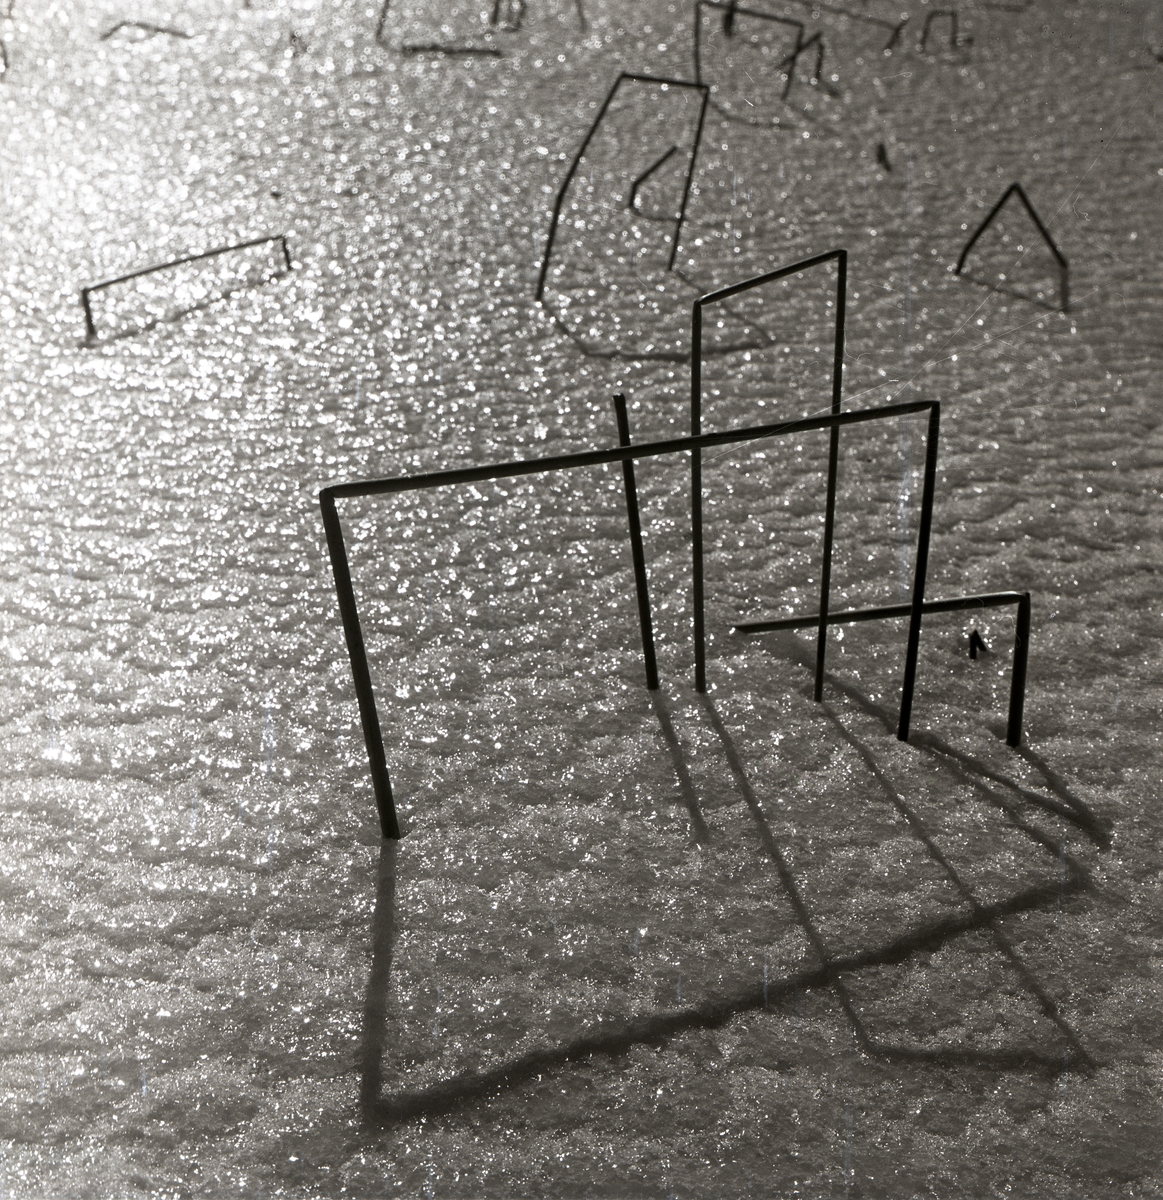 Några kvadratiskt formade vasstrån kastar skuggor på marken, 1960.